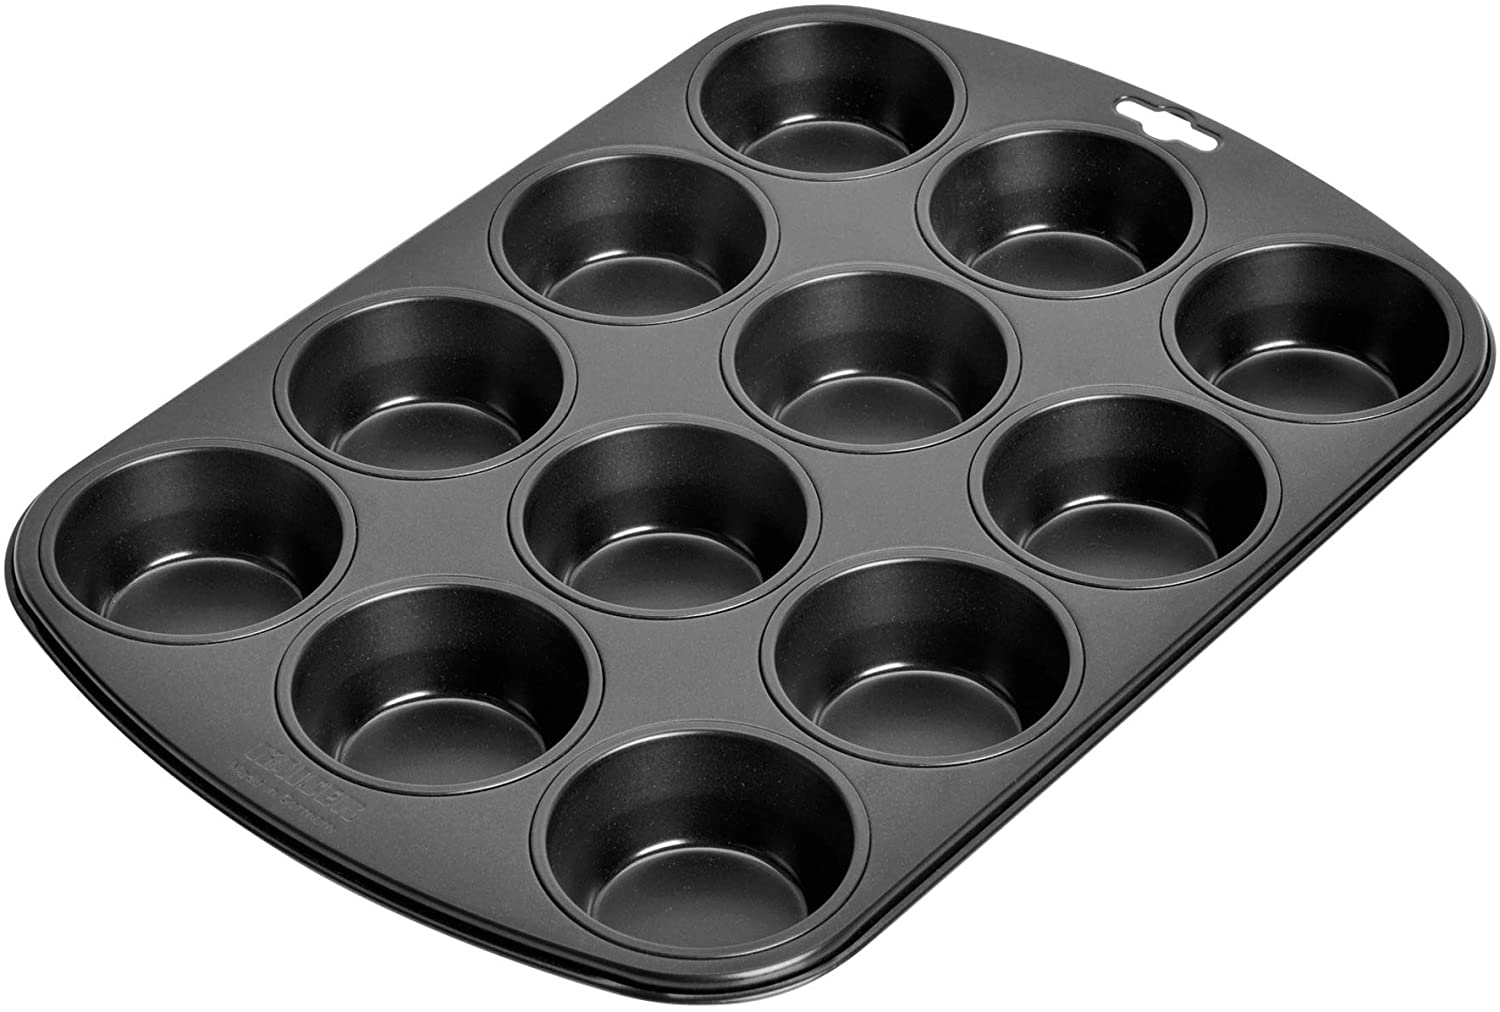 Muffinform Blech für 12 Muffins, Muffin Backblech 38 x 27 cm, beschichtet, Standardgröße, Cupcake Formen, Muffinblech Kaiser 646206 Inspiration